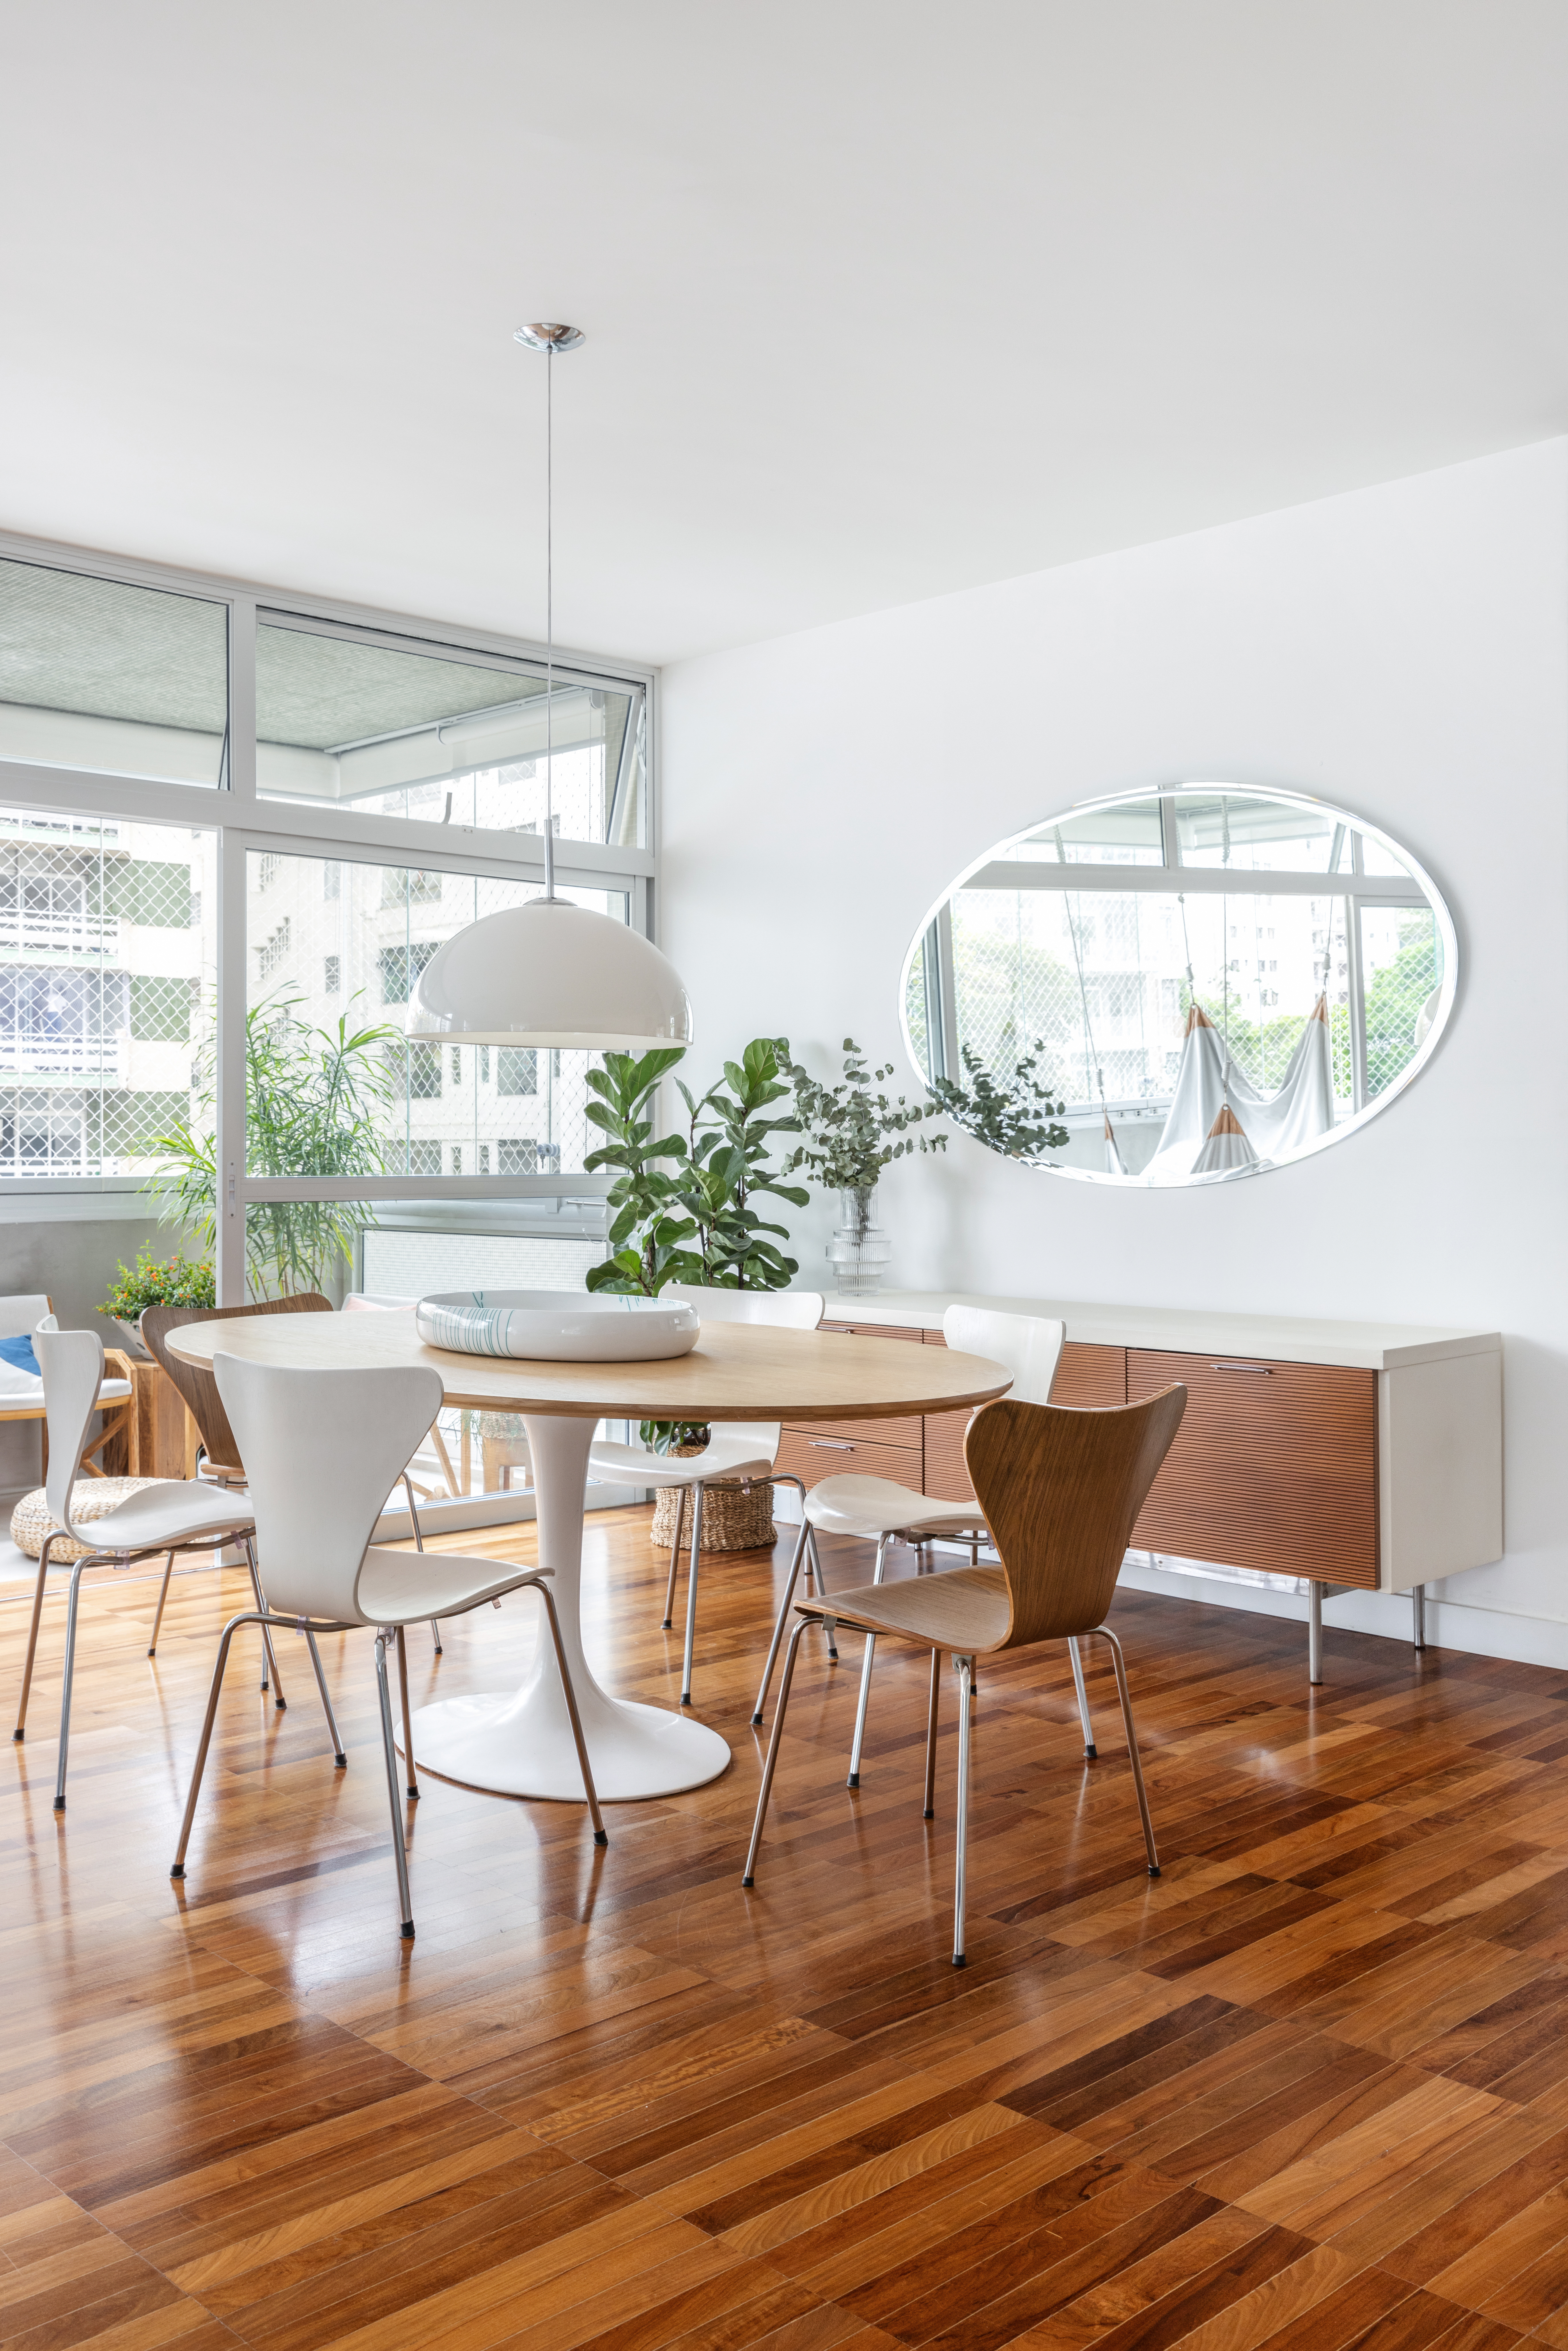 Com paleta branca, apê de 240 m² tem porta de correr inspirada em biombos. Projeto de Lucia Manzano. Na foto, sala, piso de madeira, mesa de jantar, plantas, espelho oval.